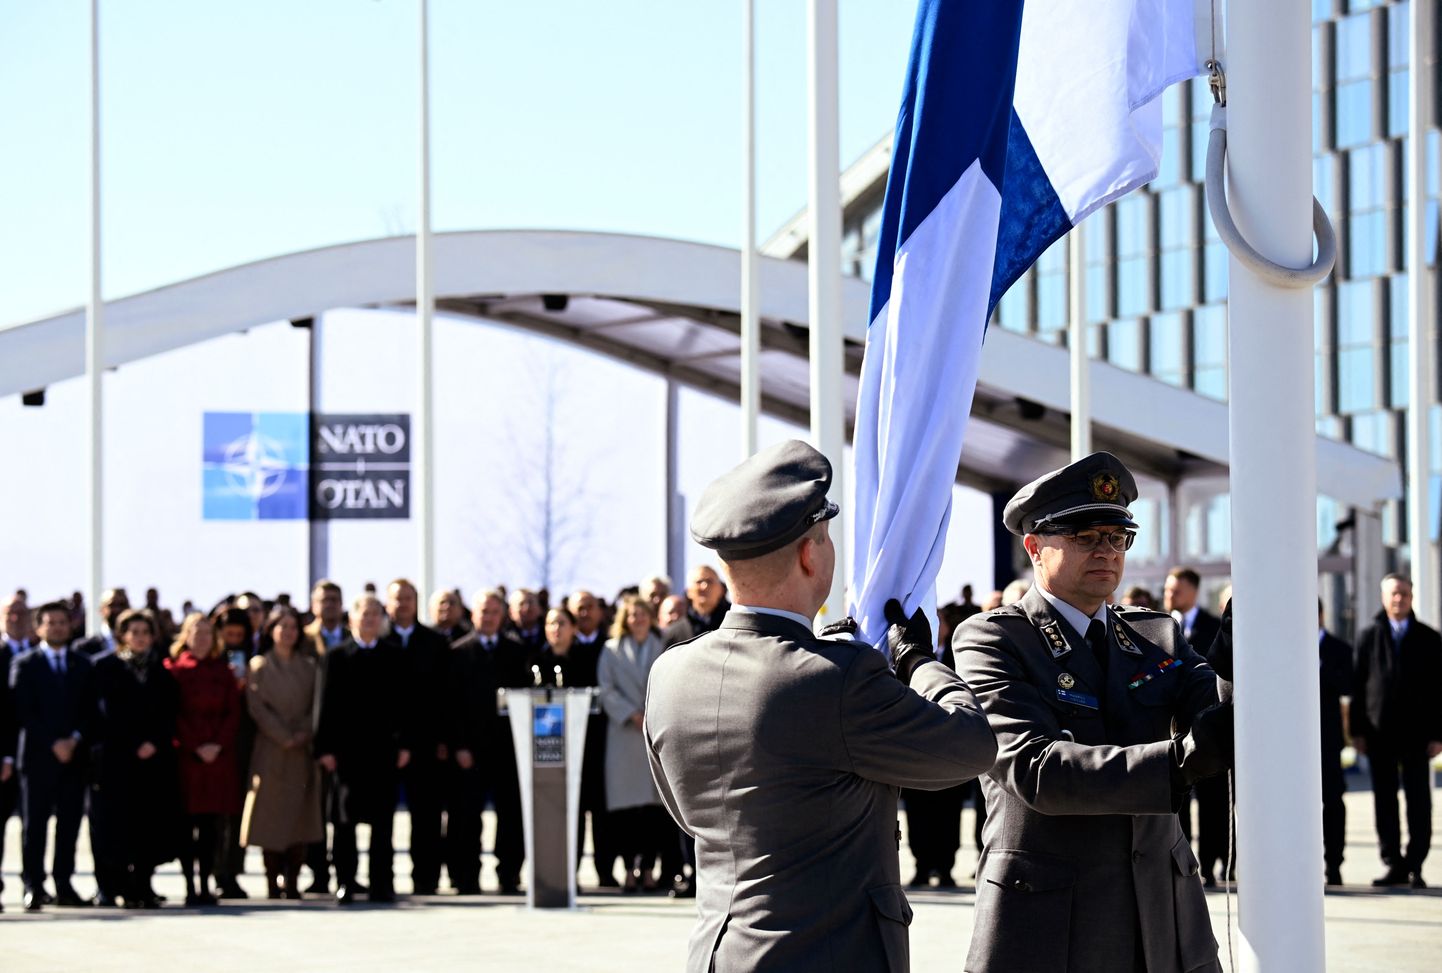 Финские военнослужащие устанавливают национальный флаг Финляндии у штаб-квартиры НАТО в Брюсселе